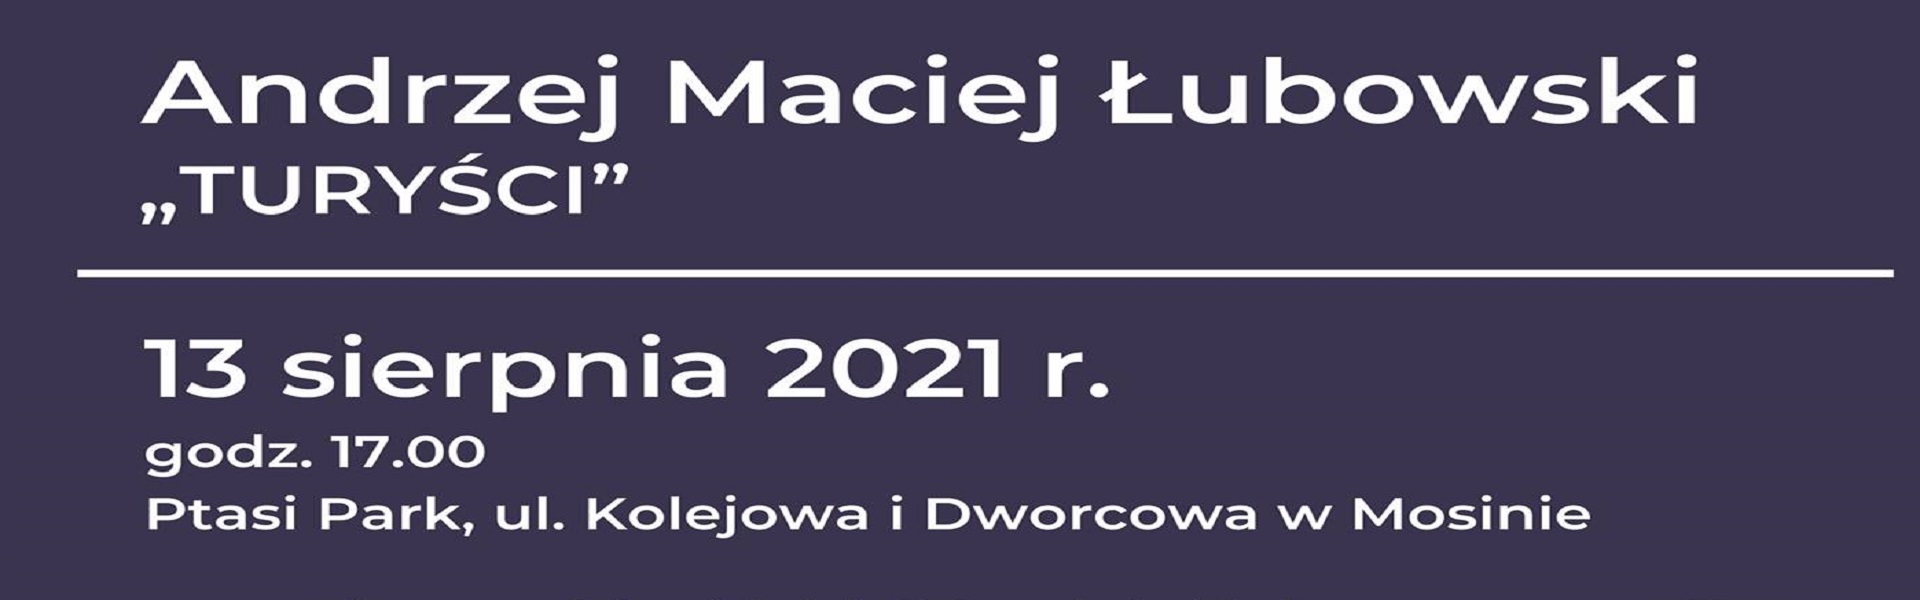 Andrzej Łubowski banner